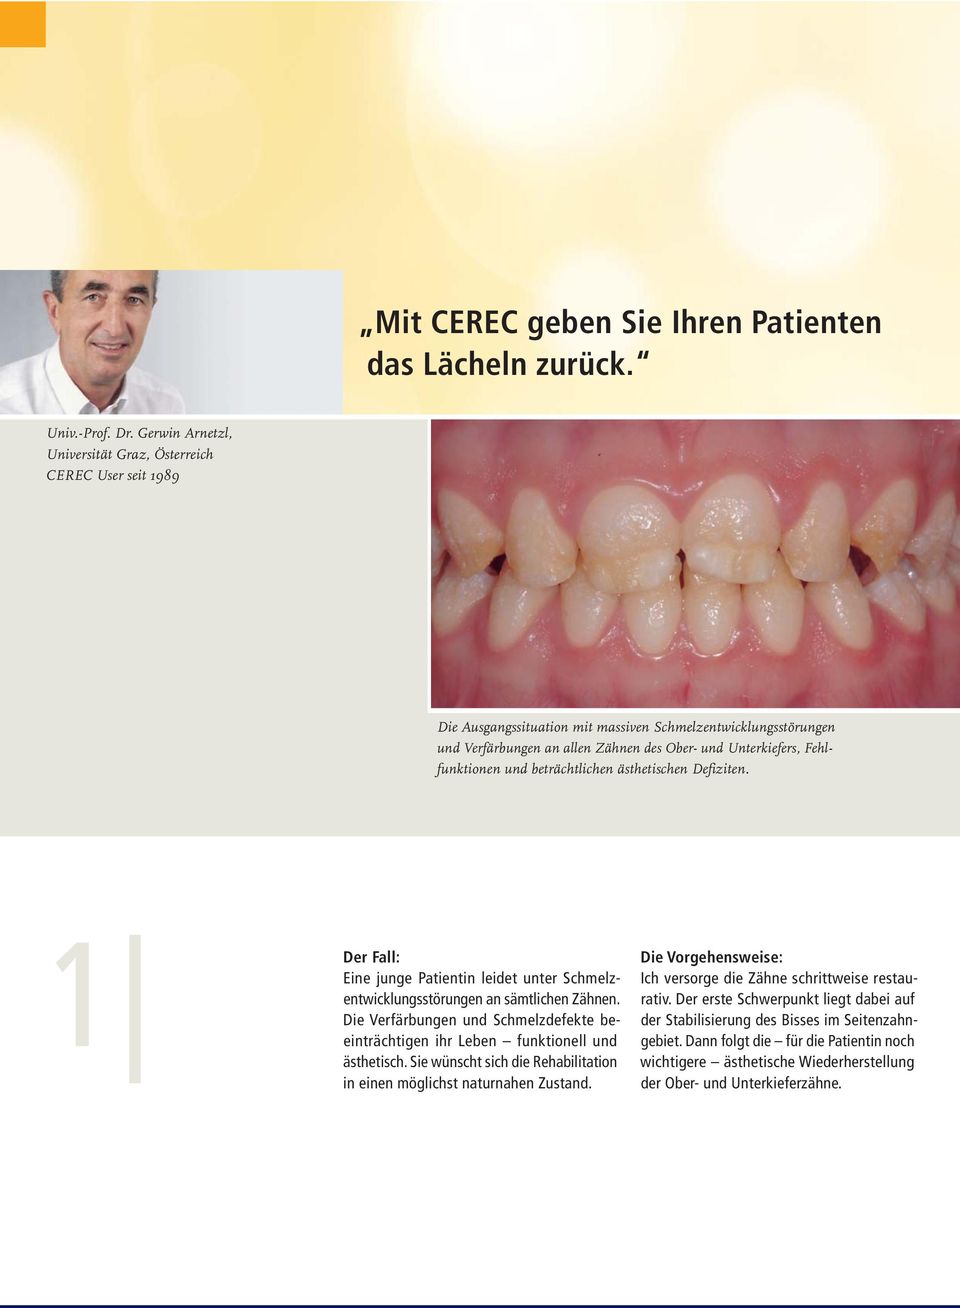 Fehlfunktionen und beträchtlichen ästhetischen Defiziten. 1 Der Fall: Eine junge Patientin leidet unter Schmelzentwicklungsstörungen an sämtlichen Zähnen.